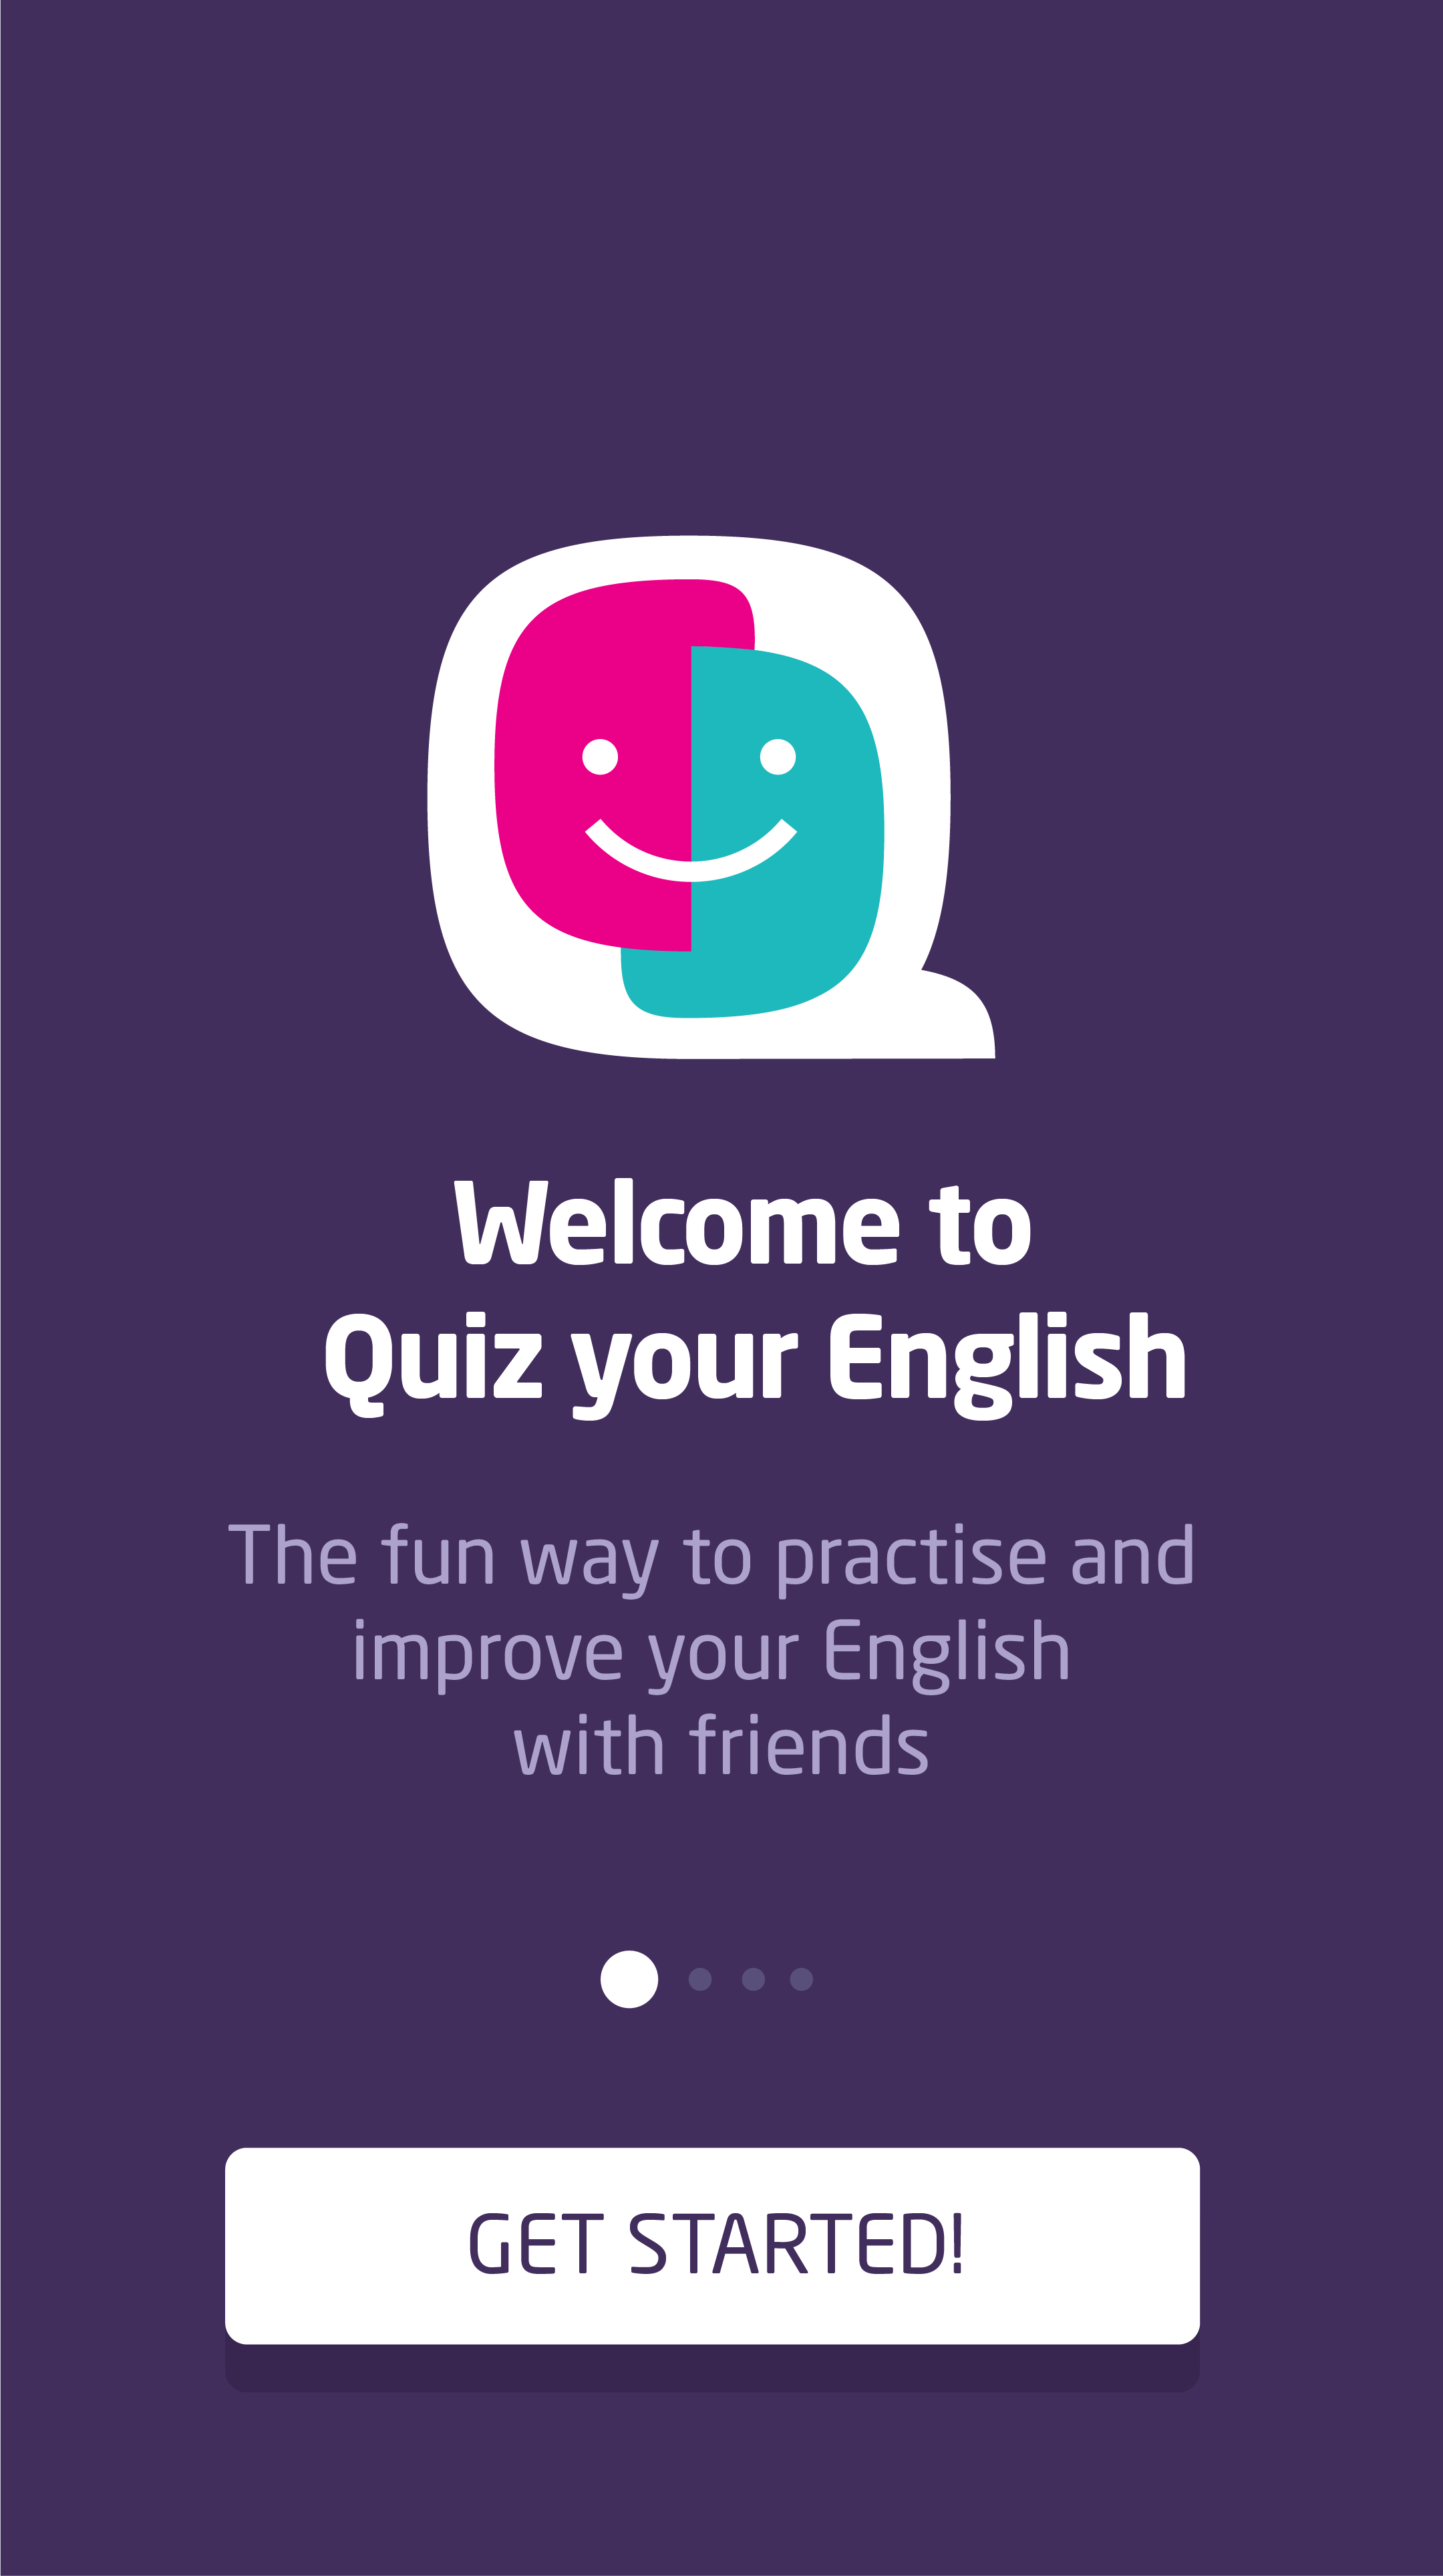 2019.06.19 - Amigos Ingleses o cómo incentivar el aprendizaje del inglés a través de la web